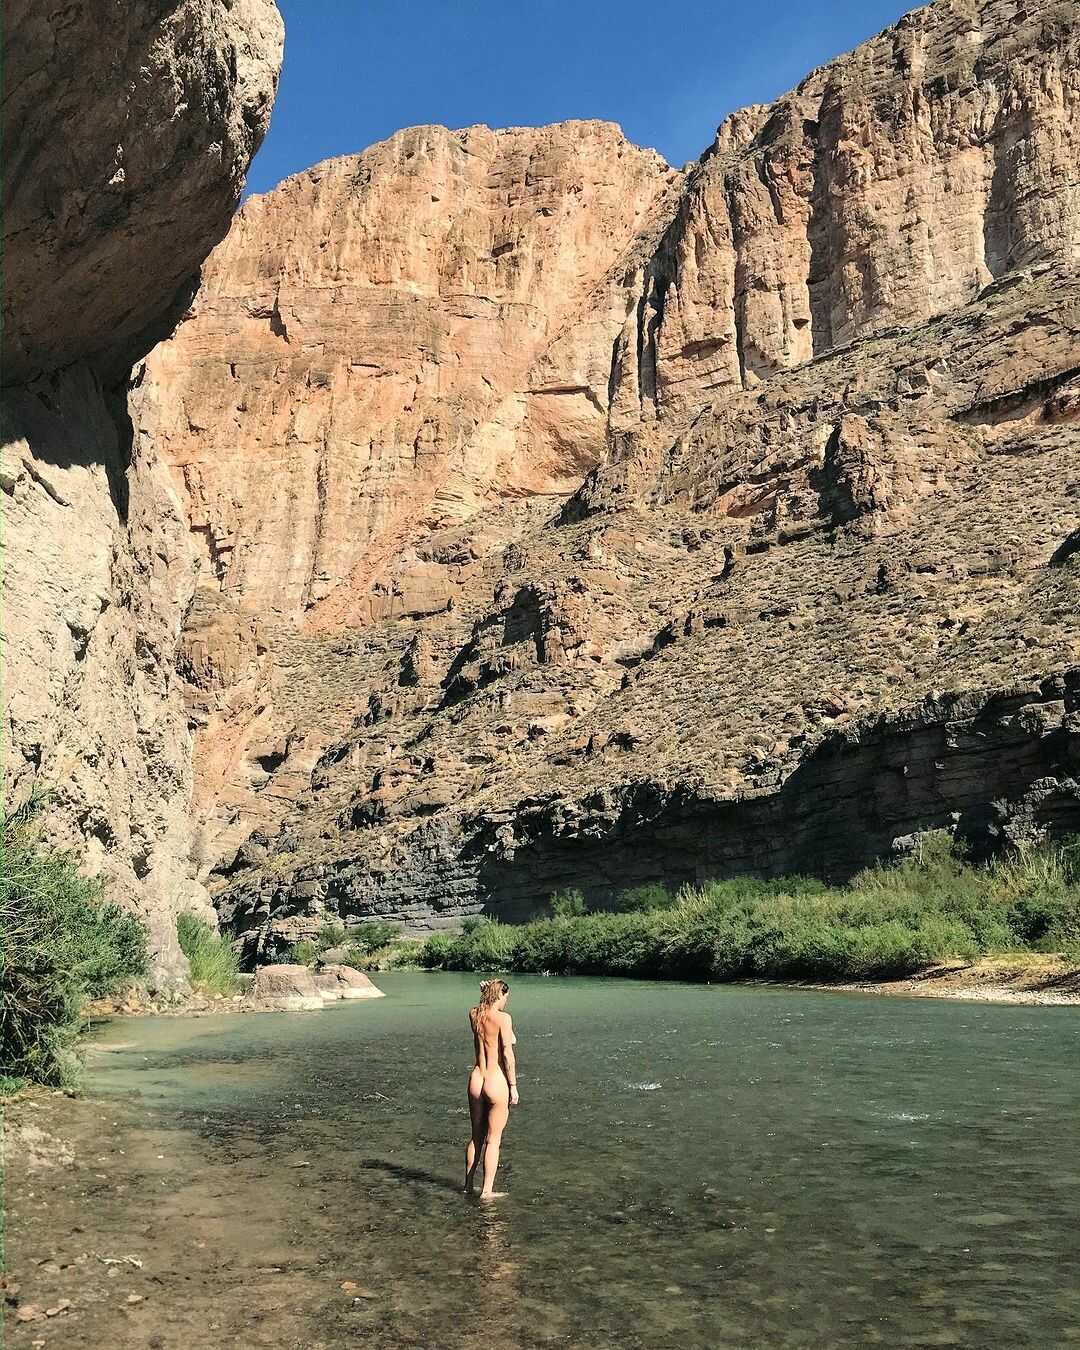 Η Ke$ha γυμνή σε σέξι φωτογραφίες